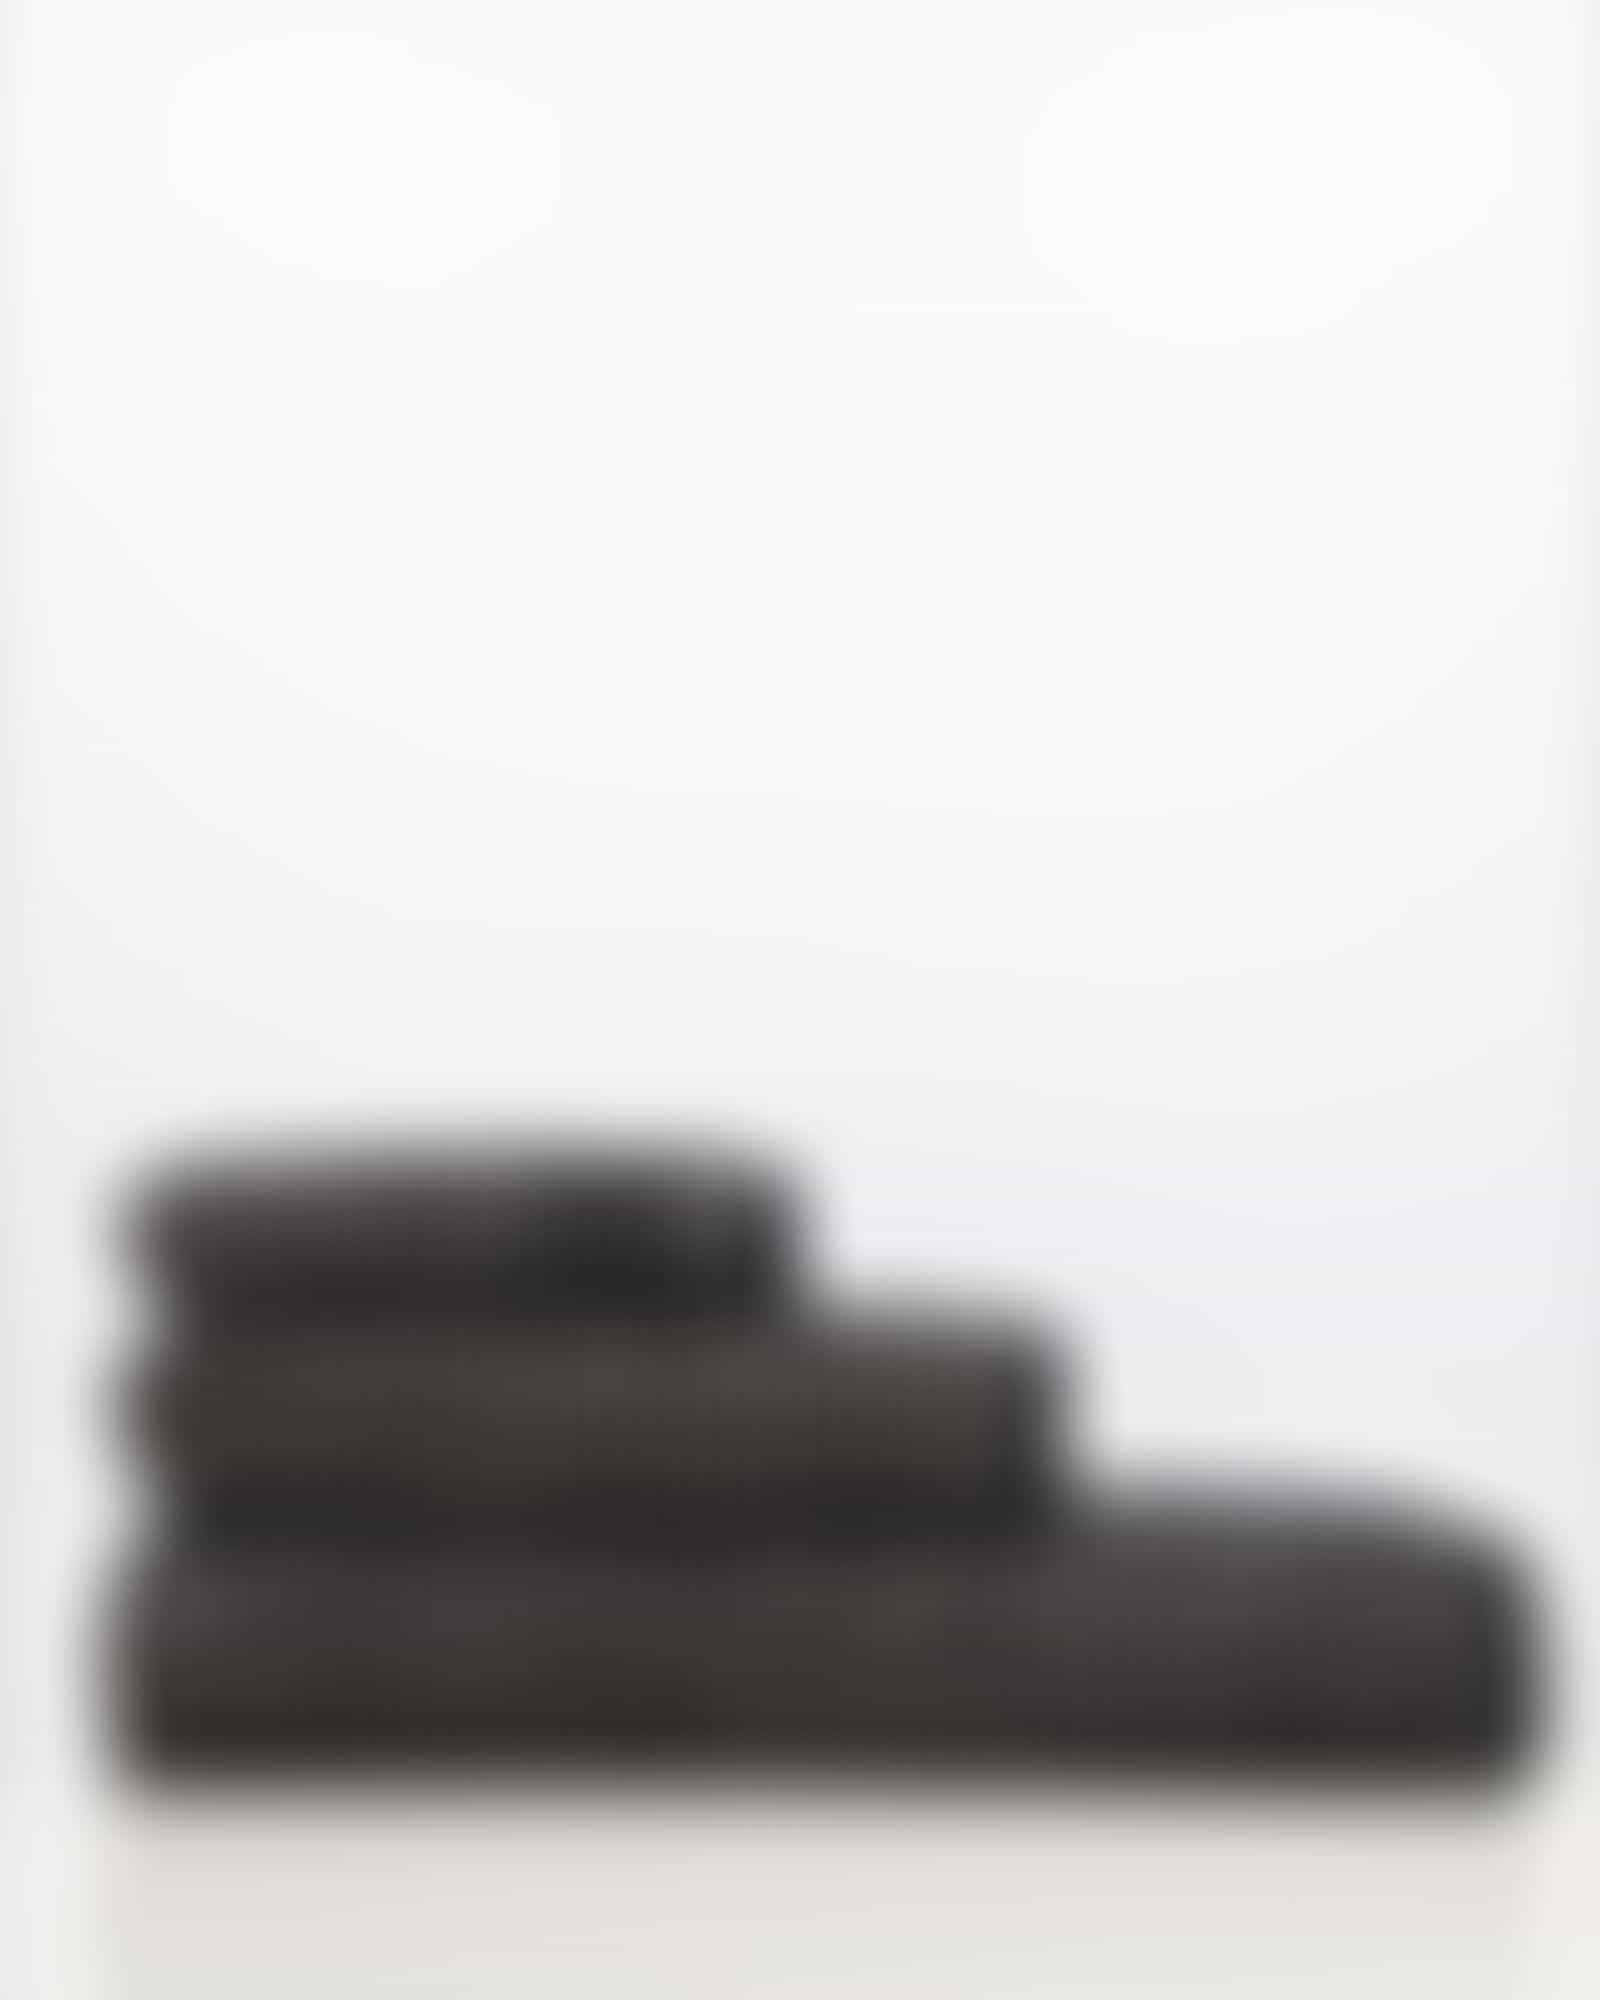 JOOP! Handtücher Select Allover 1695 - Farbe: ebony - 39 - Duschtuch 80x150 cm Detailbild 3